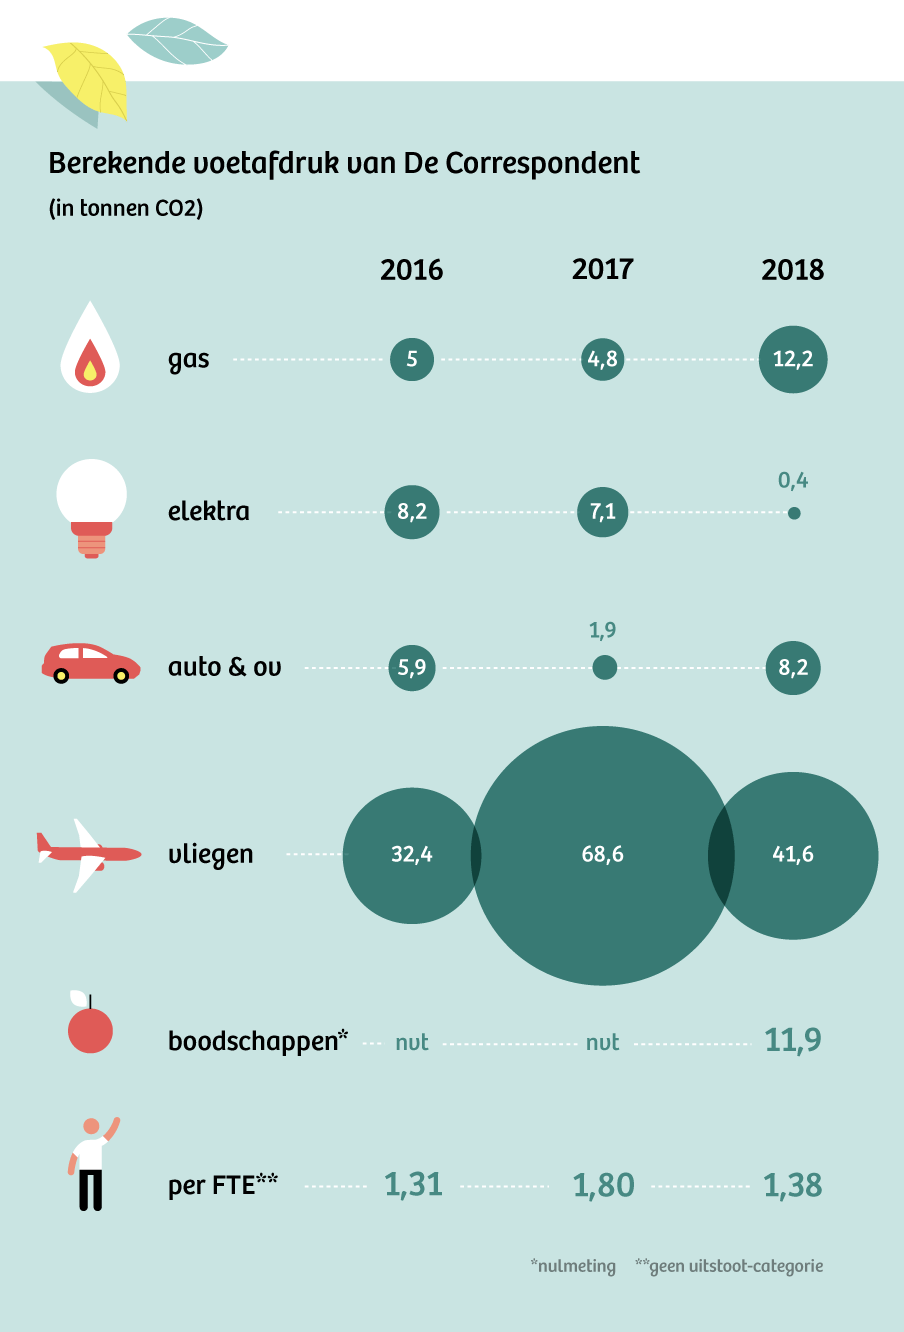 Infographic met de berekende voetafdruk van De Correspondent in tonnen CO2 per jaar. In 2018 werd er 12,2 ton co2 aan gas uitgestoten, 0,4 aan elektra, 8,2 aan auto en ov, 41,6 aan vliegen, en 11,9 aan boodschappen (nulmeting). Per FTE is dat 1,38 ton co2 per per jaar. In 2017 was dat meer: 1,8.